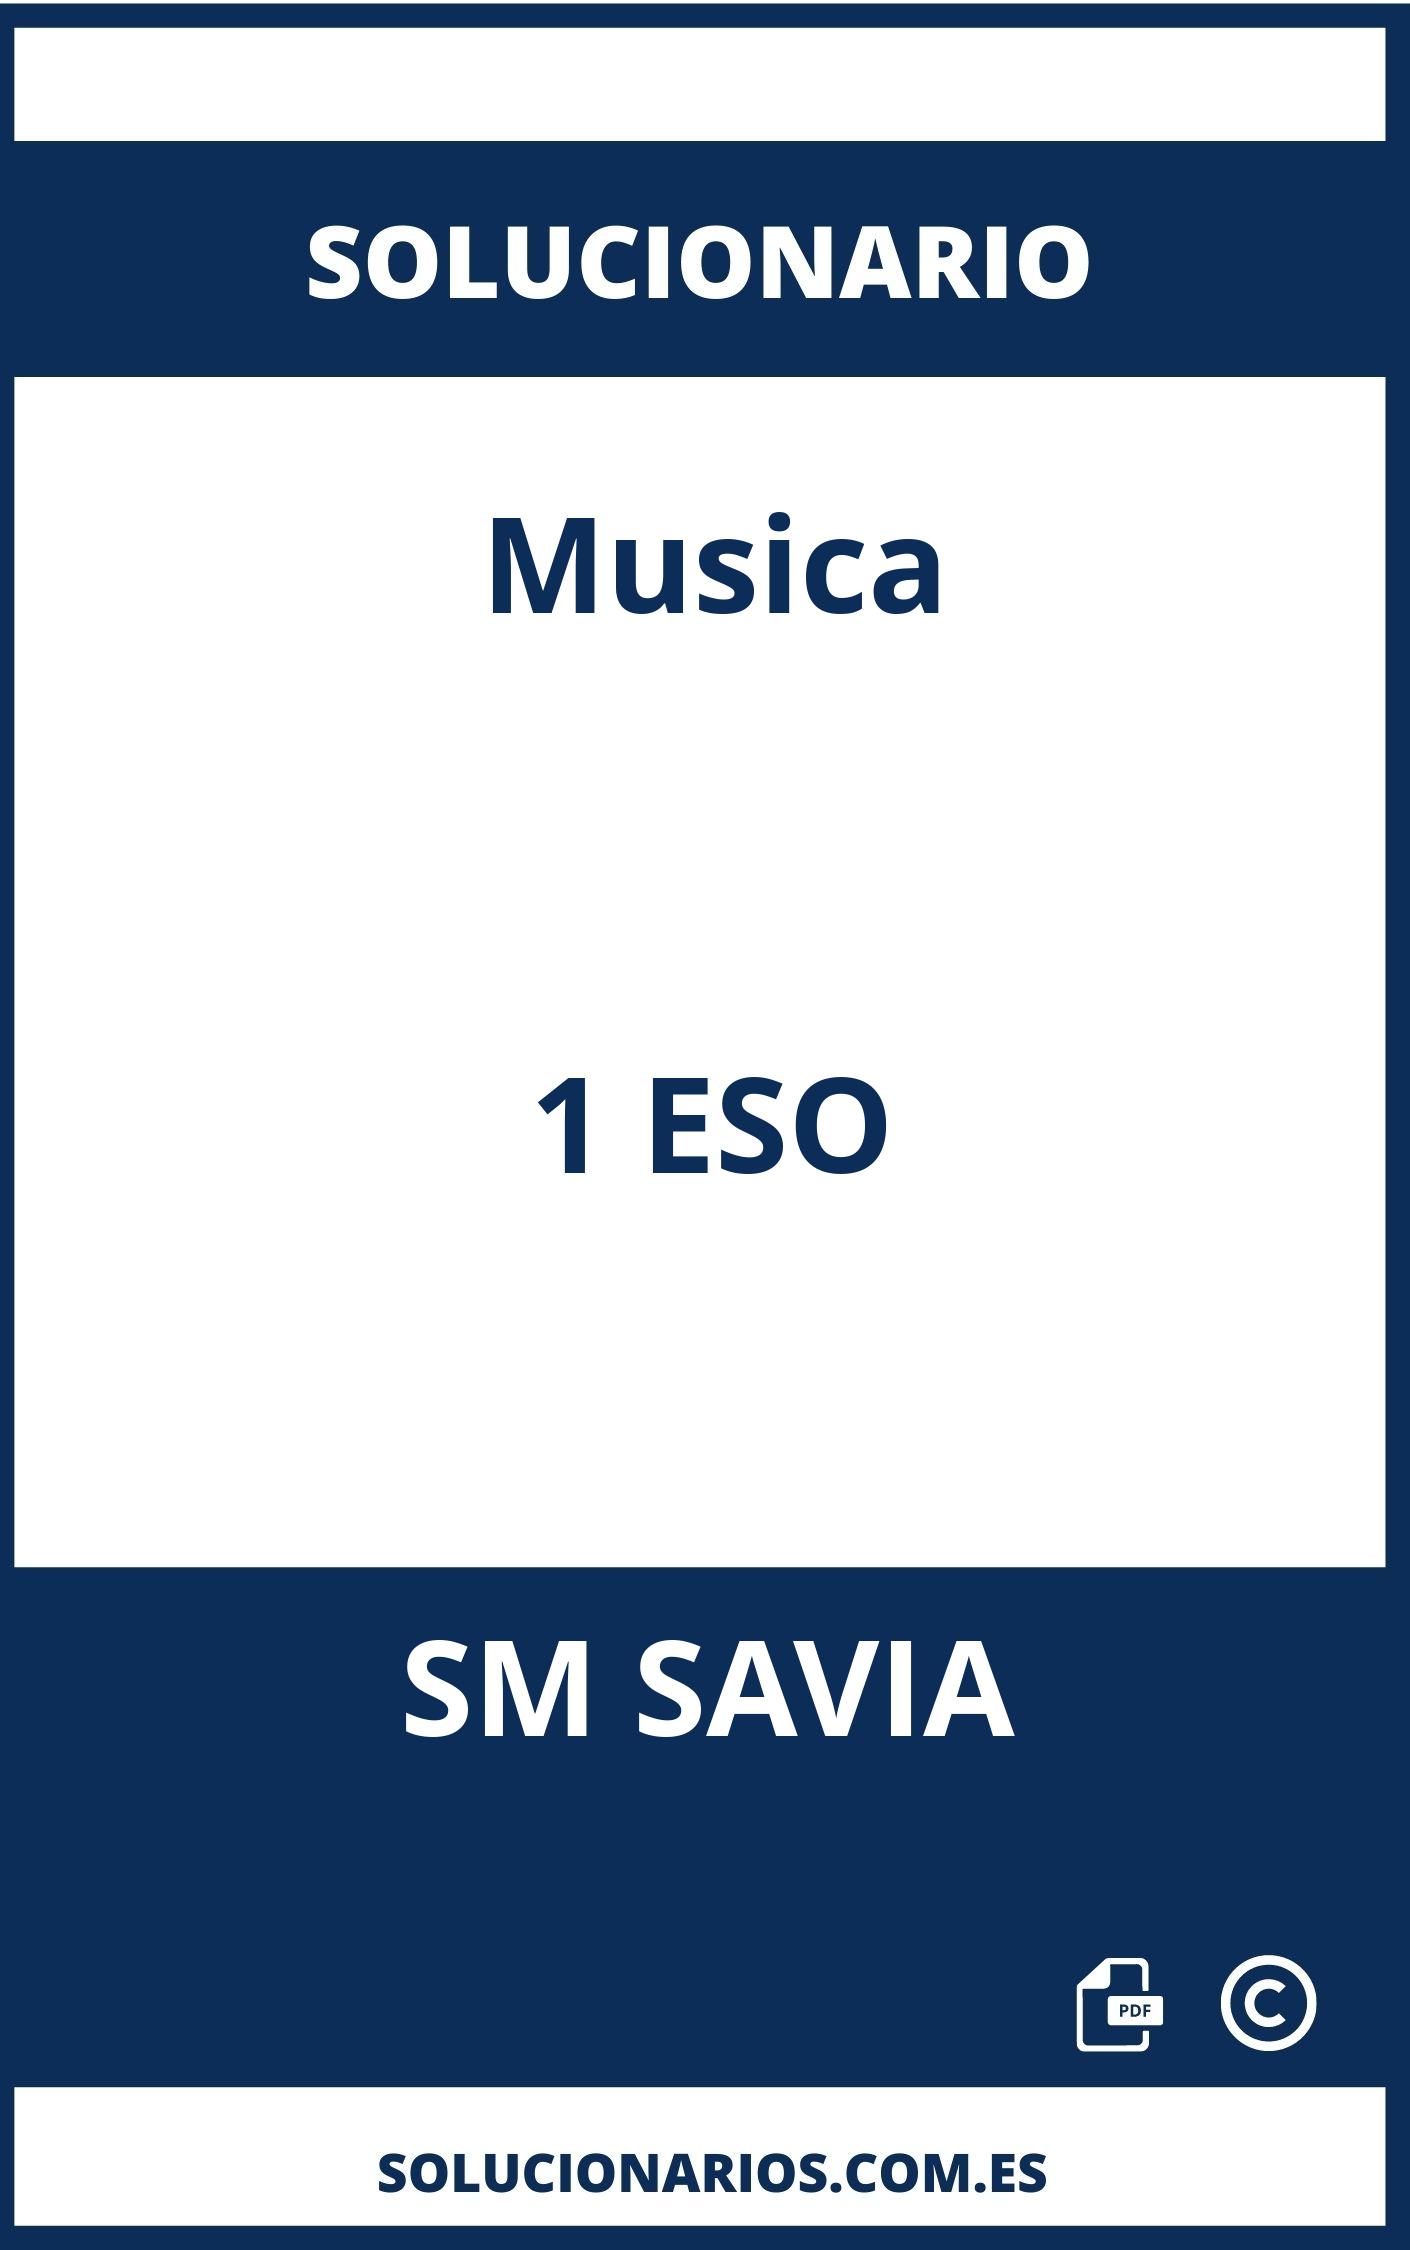 Solucionario Musica 1 ESO SM SAVIA